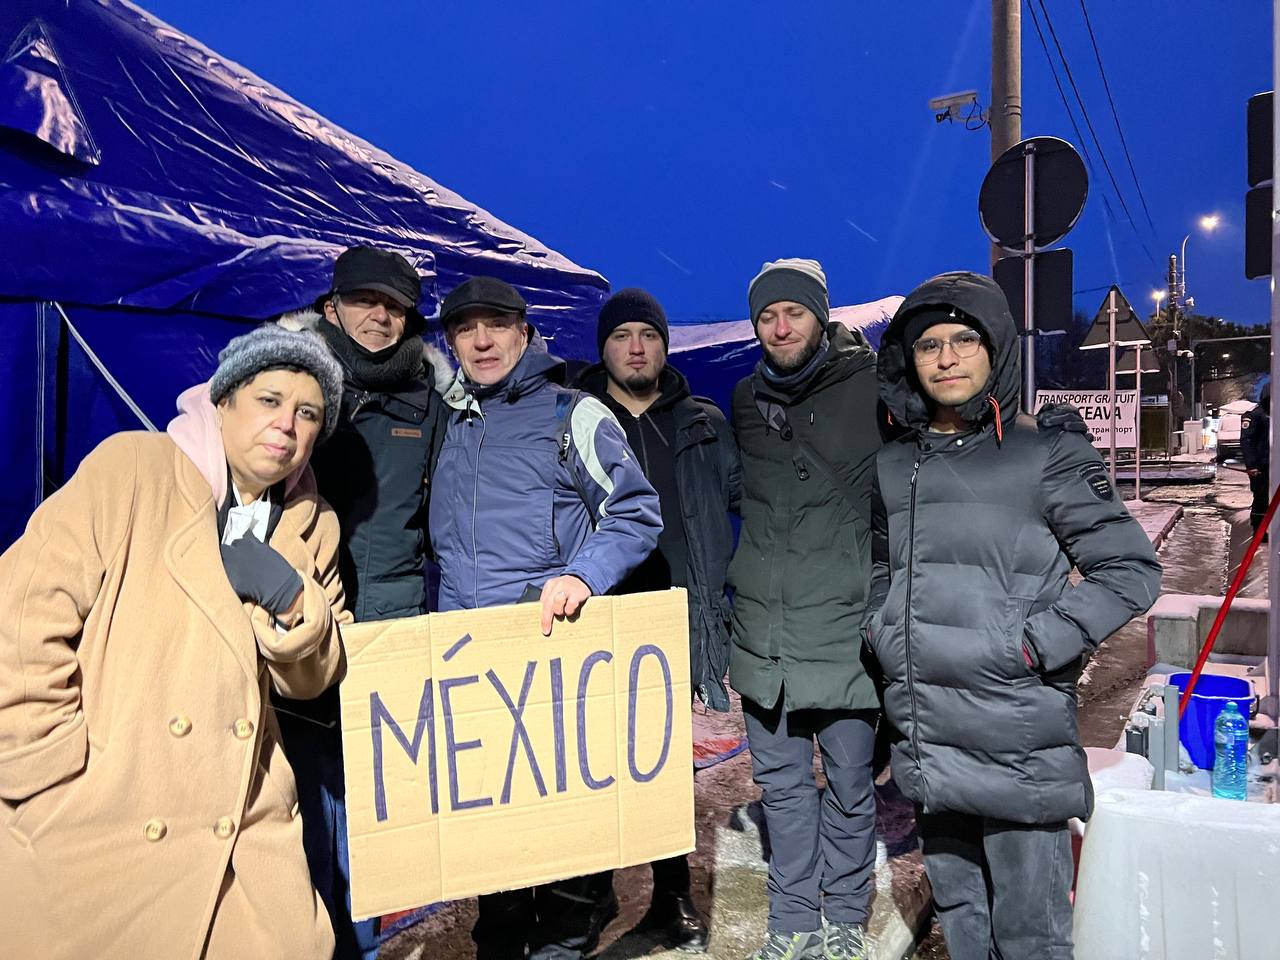 Segundo grupo de mexicanos procedente de Kiev, Ucrania llega a Rumania